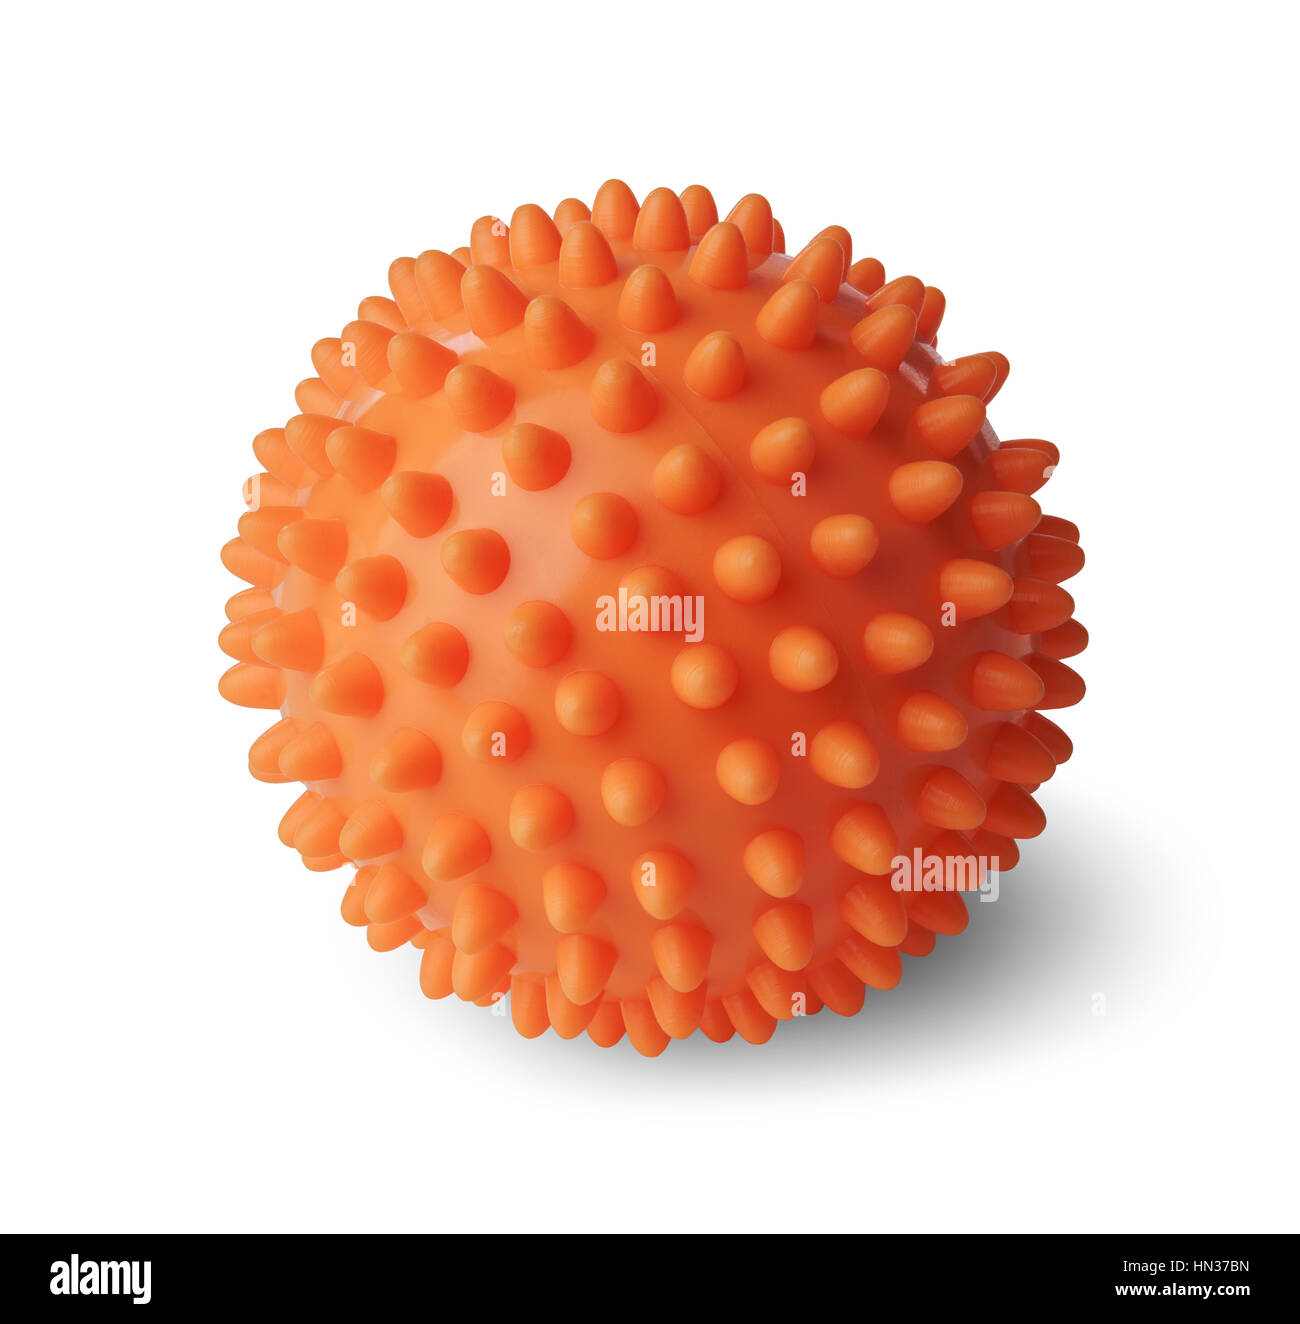 Spiny plastic orange massage ball isolated on white background Stock Photo